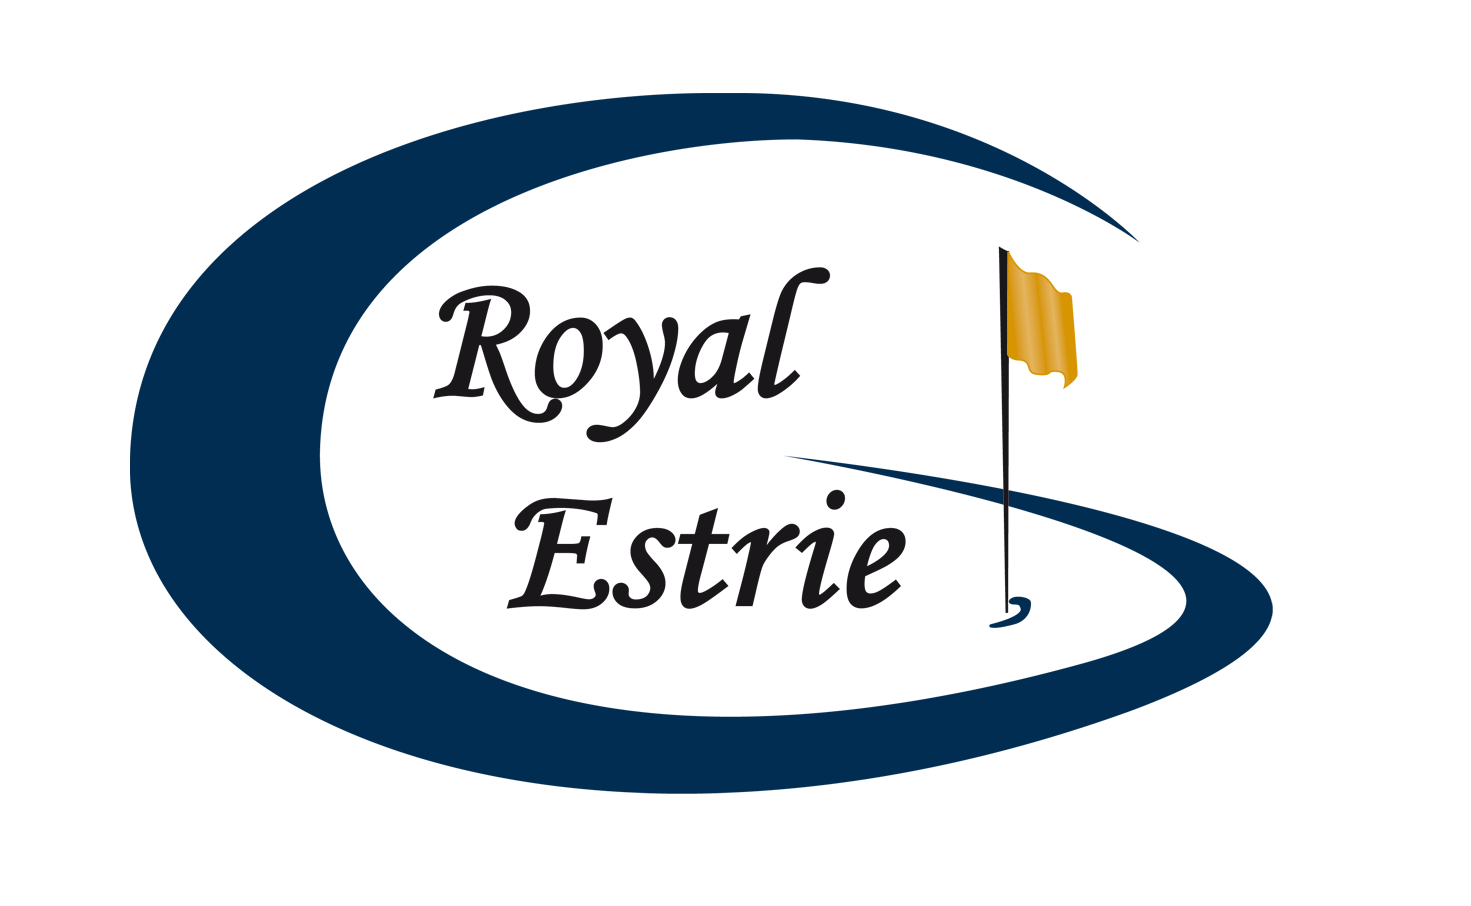 Royal Estrie logo